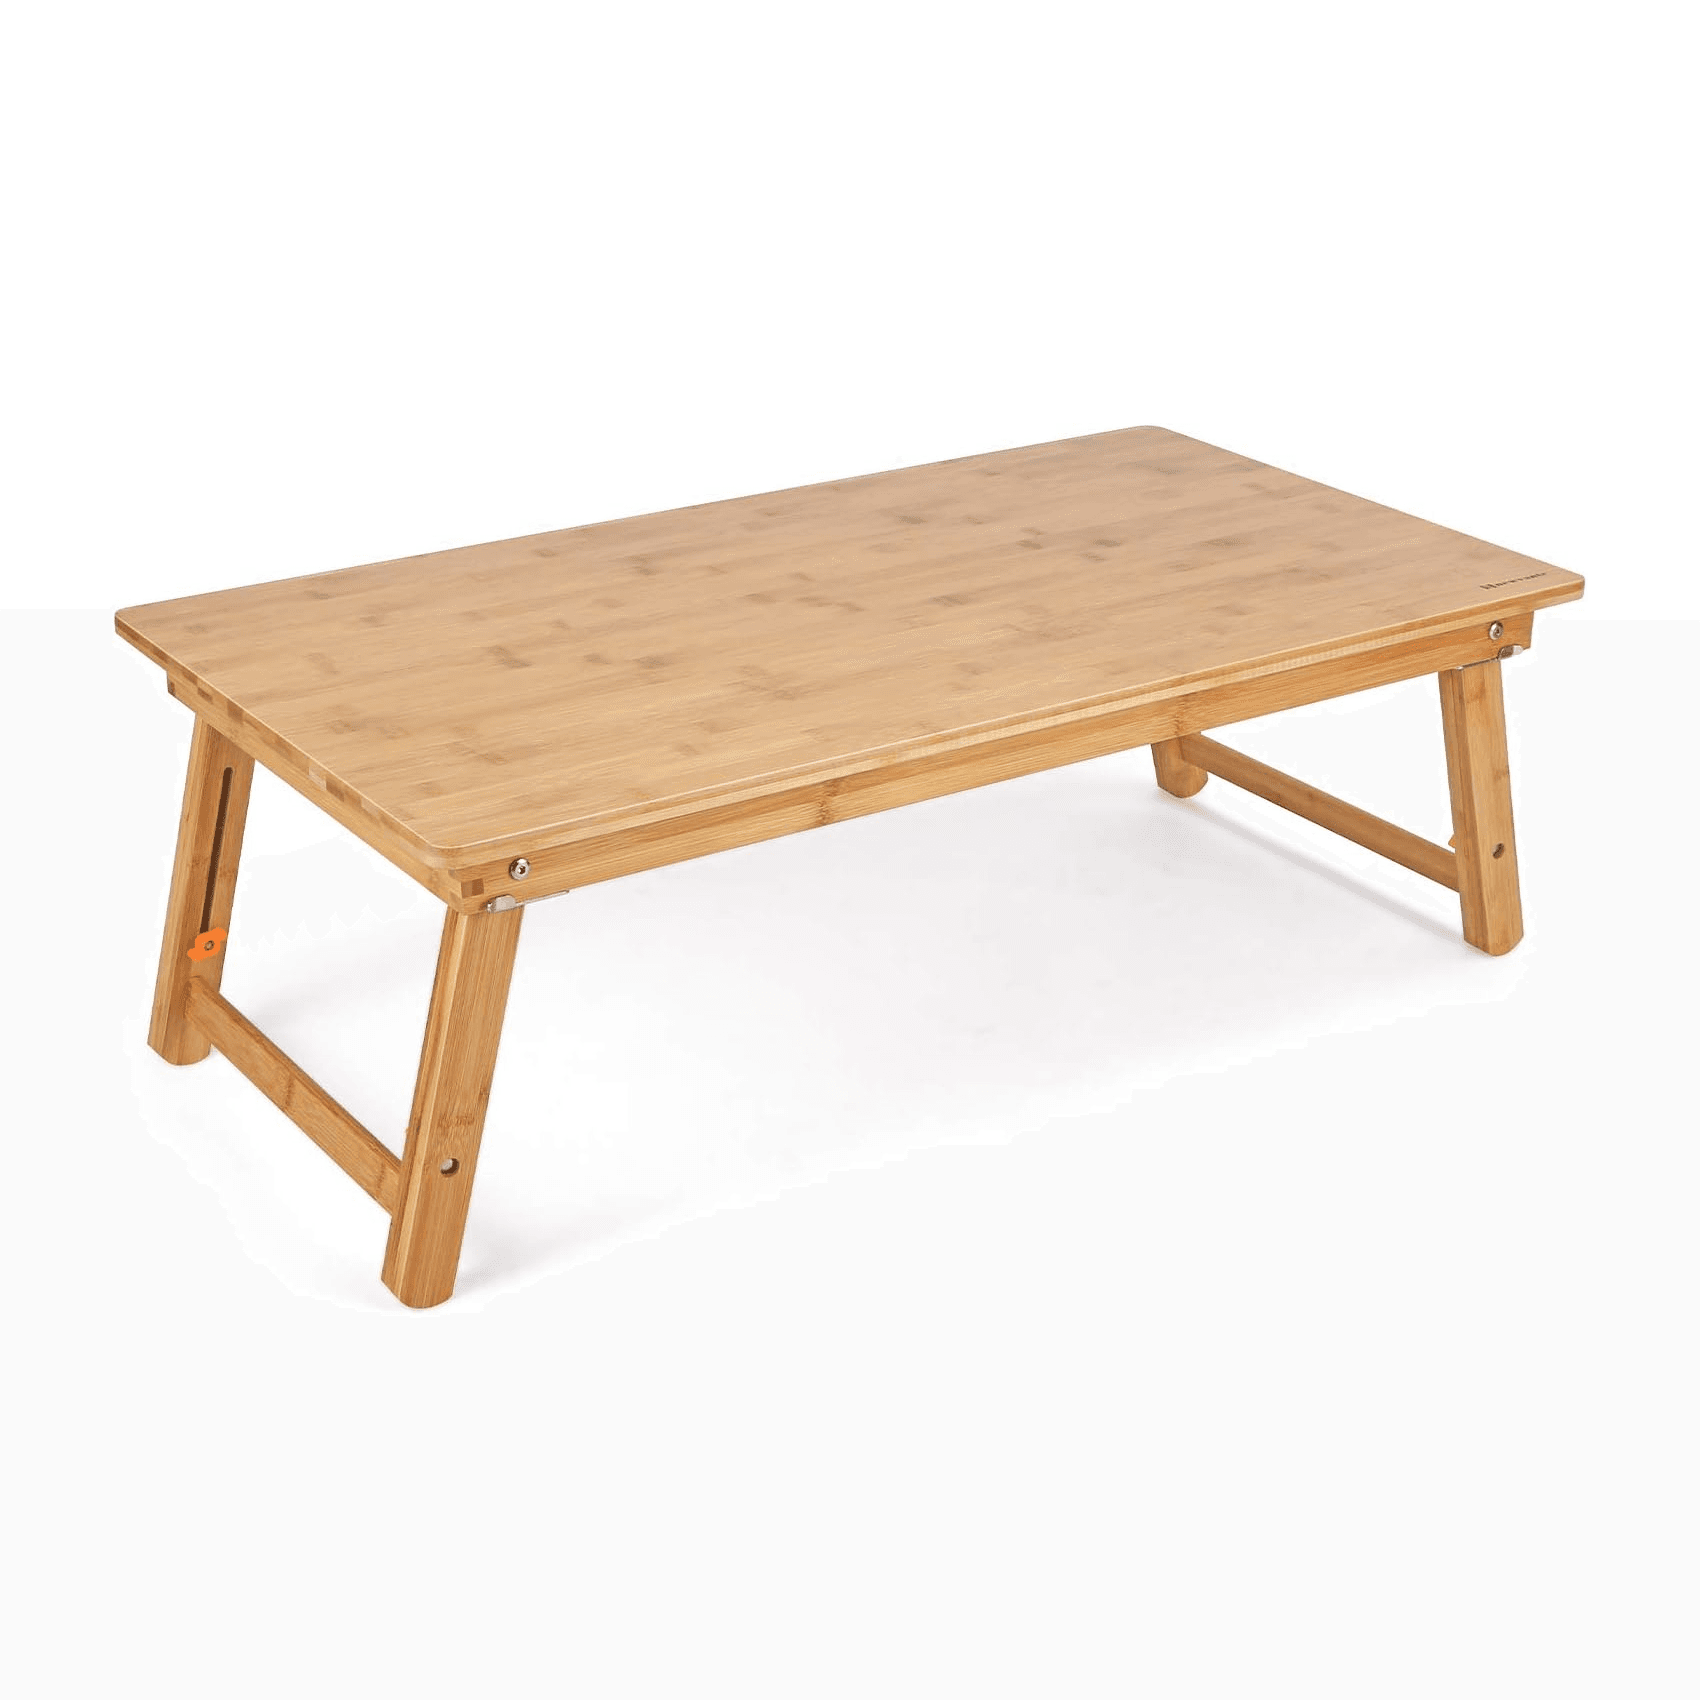 Montessori Nnewvante Chowki Floor Table With Adjustable Legs